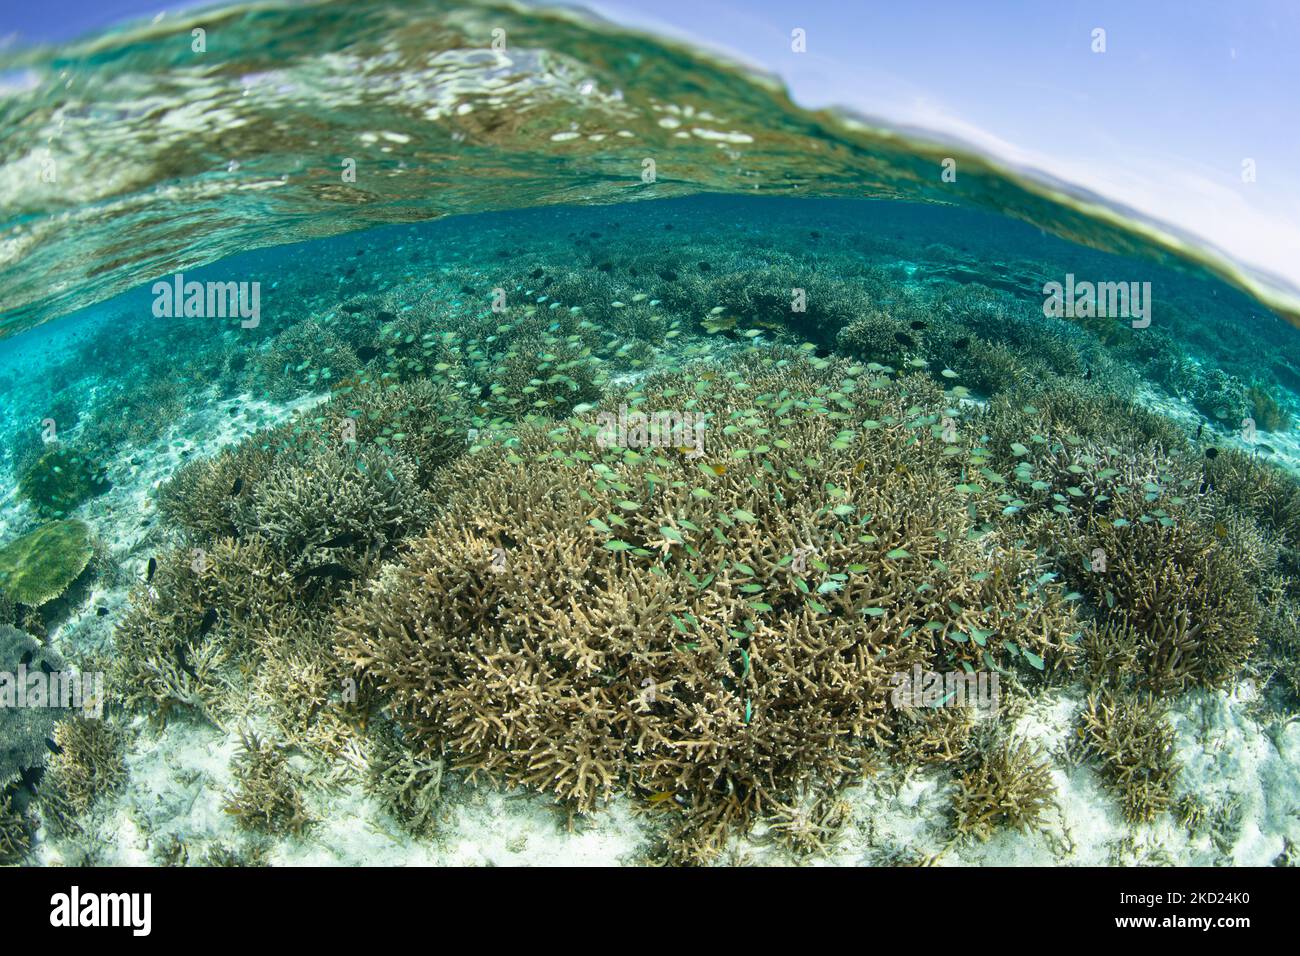 Blau-grüne Damegoistische Schule über flachen Korallen im Komodo-Nationalpark, Indonesien. Diese Region ist für ihre hohe marine Biodiversität bekannt. Stockfoto